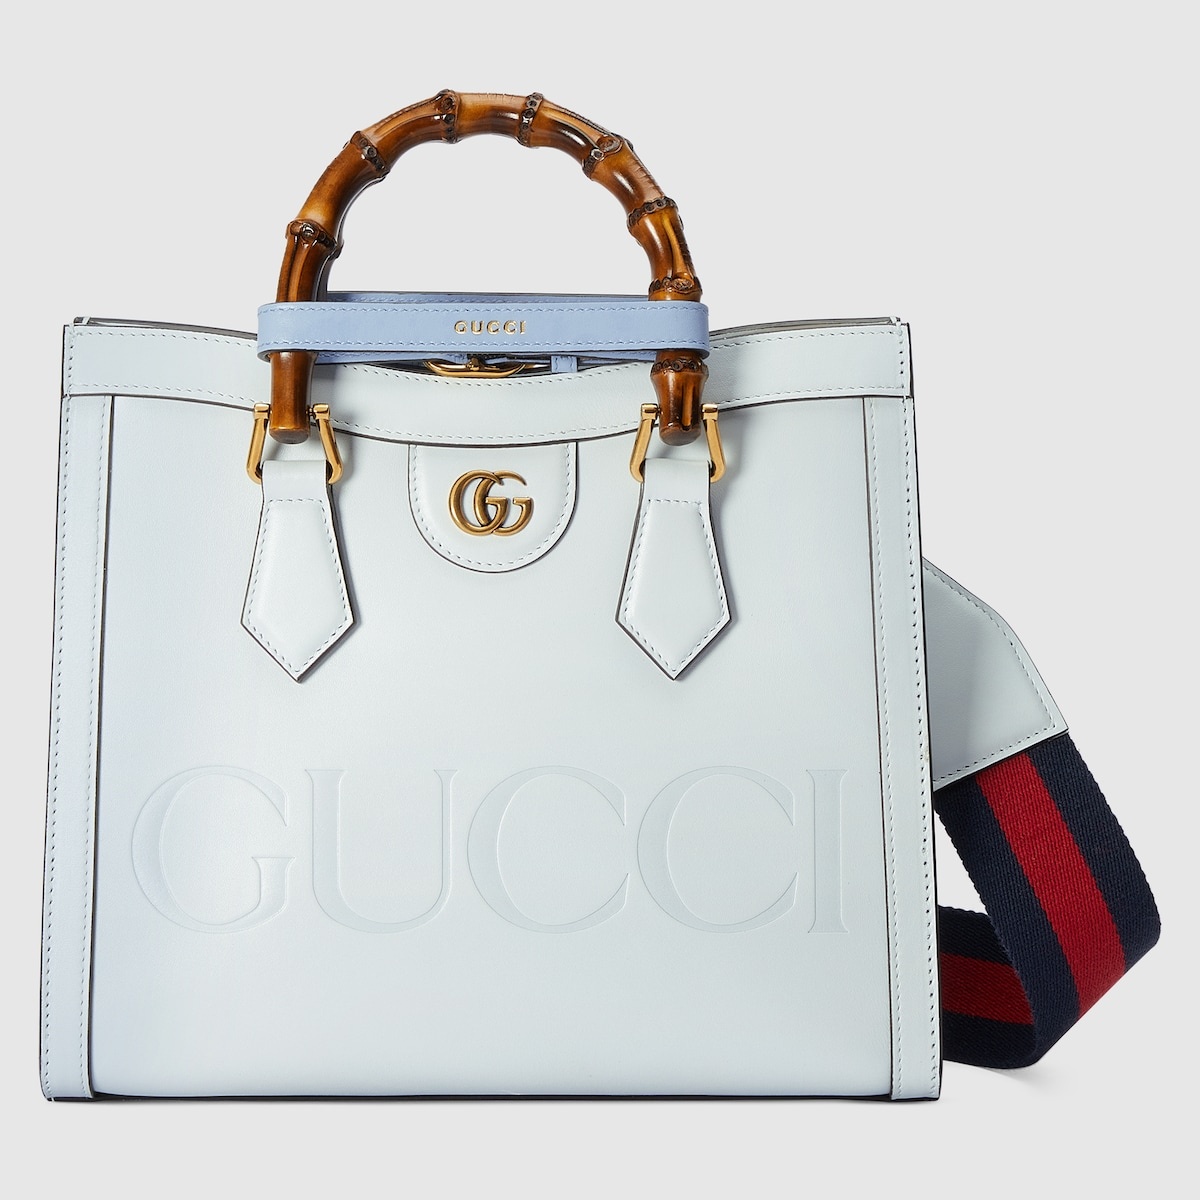 Gucci Diana small tote bag - 1